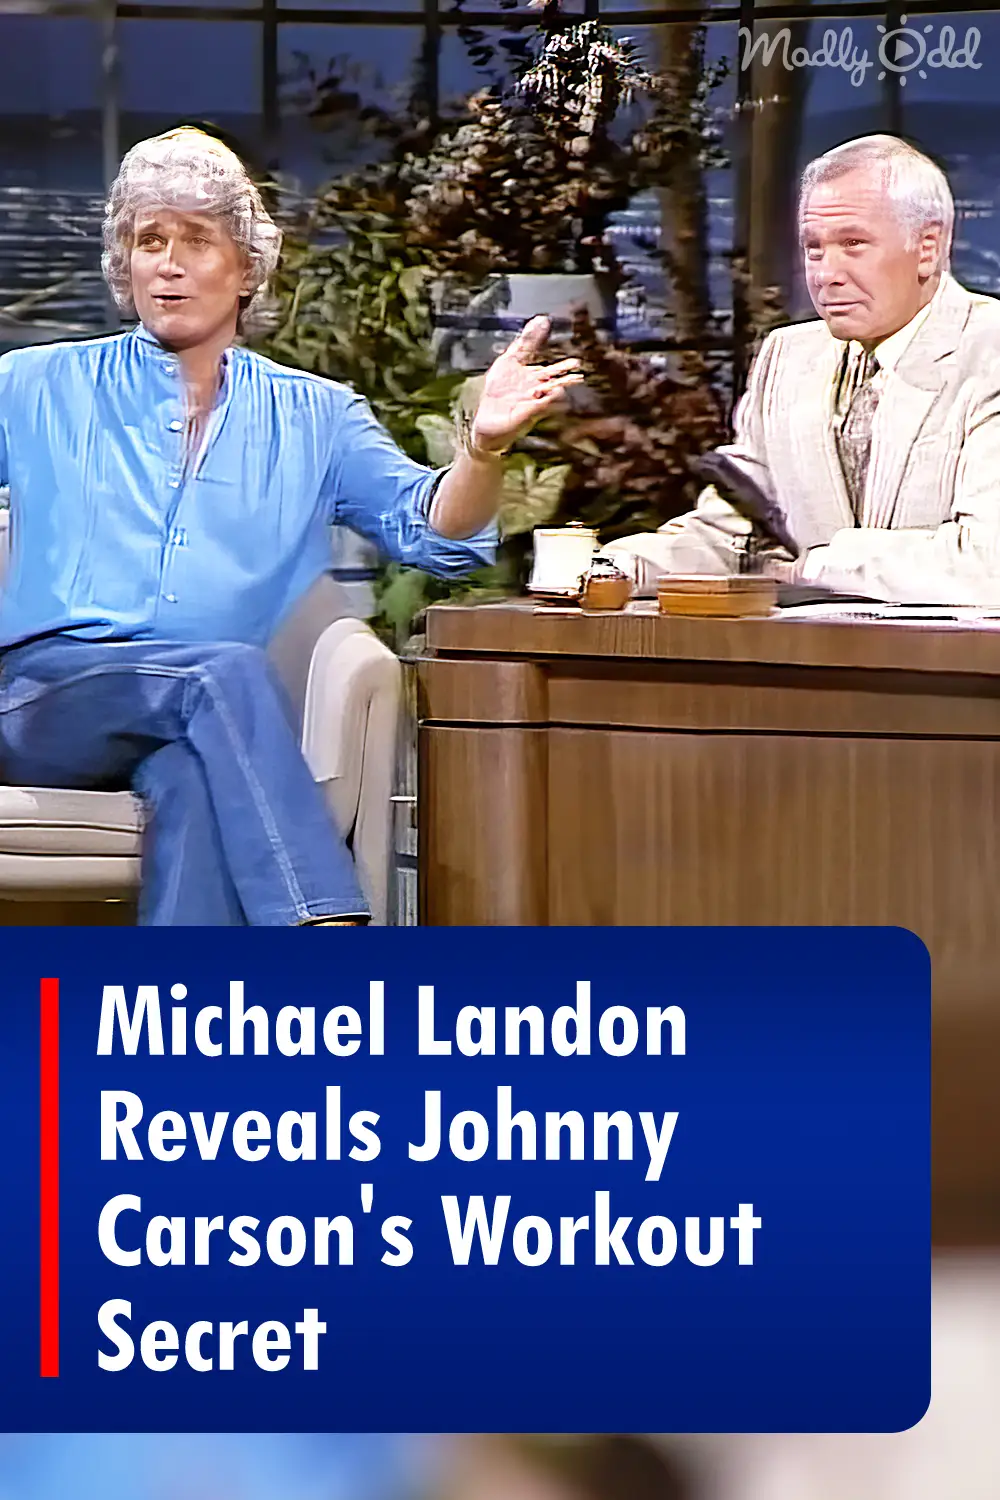 Michael Landon Reveals Johnny Carson's Workout Secret